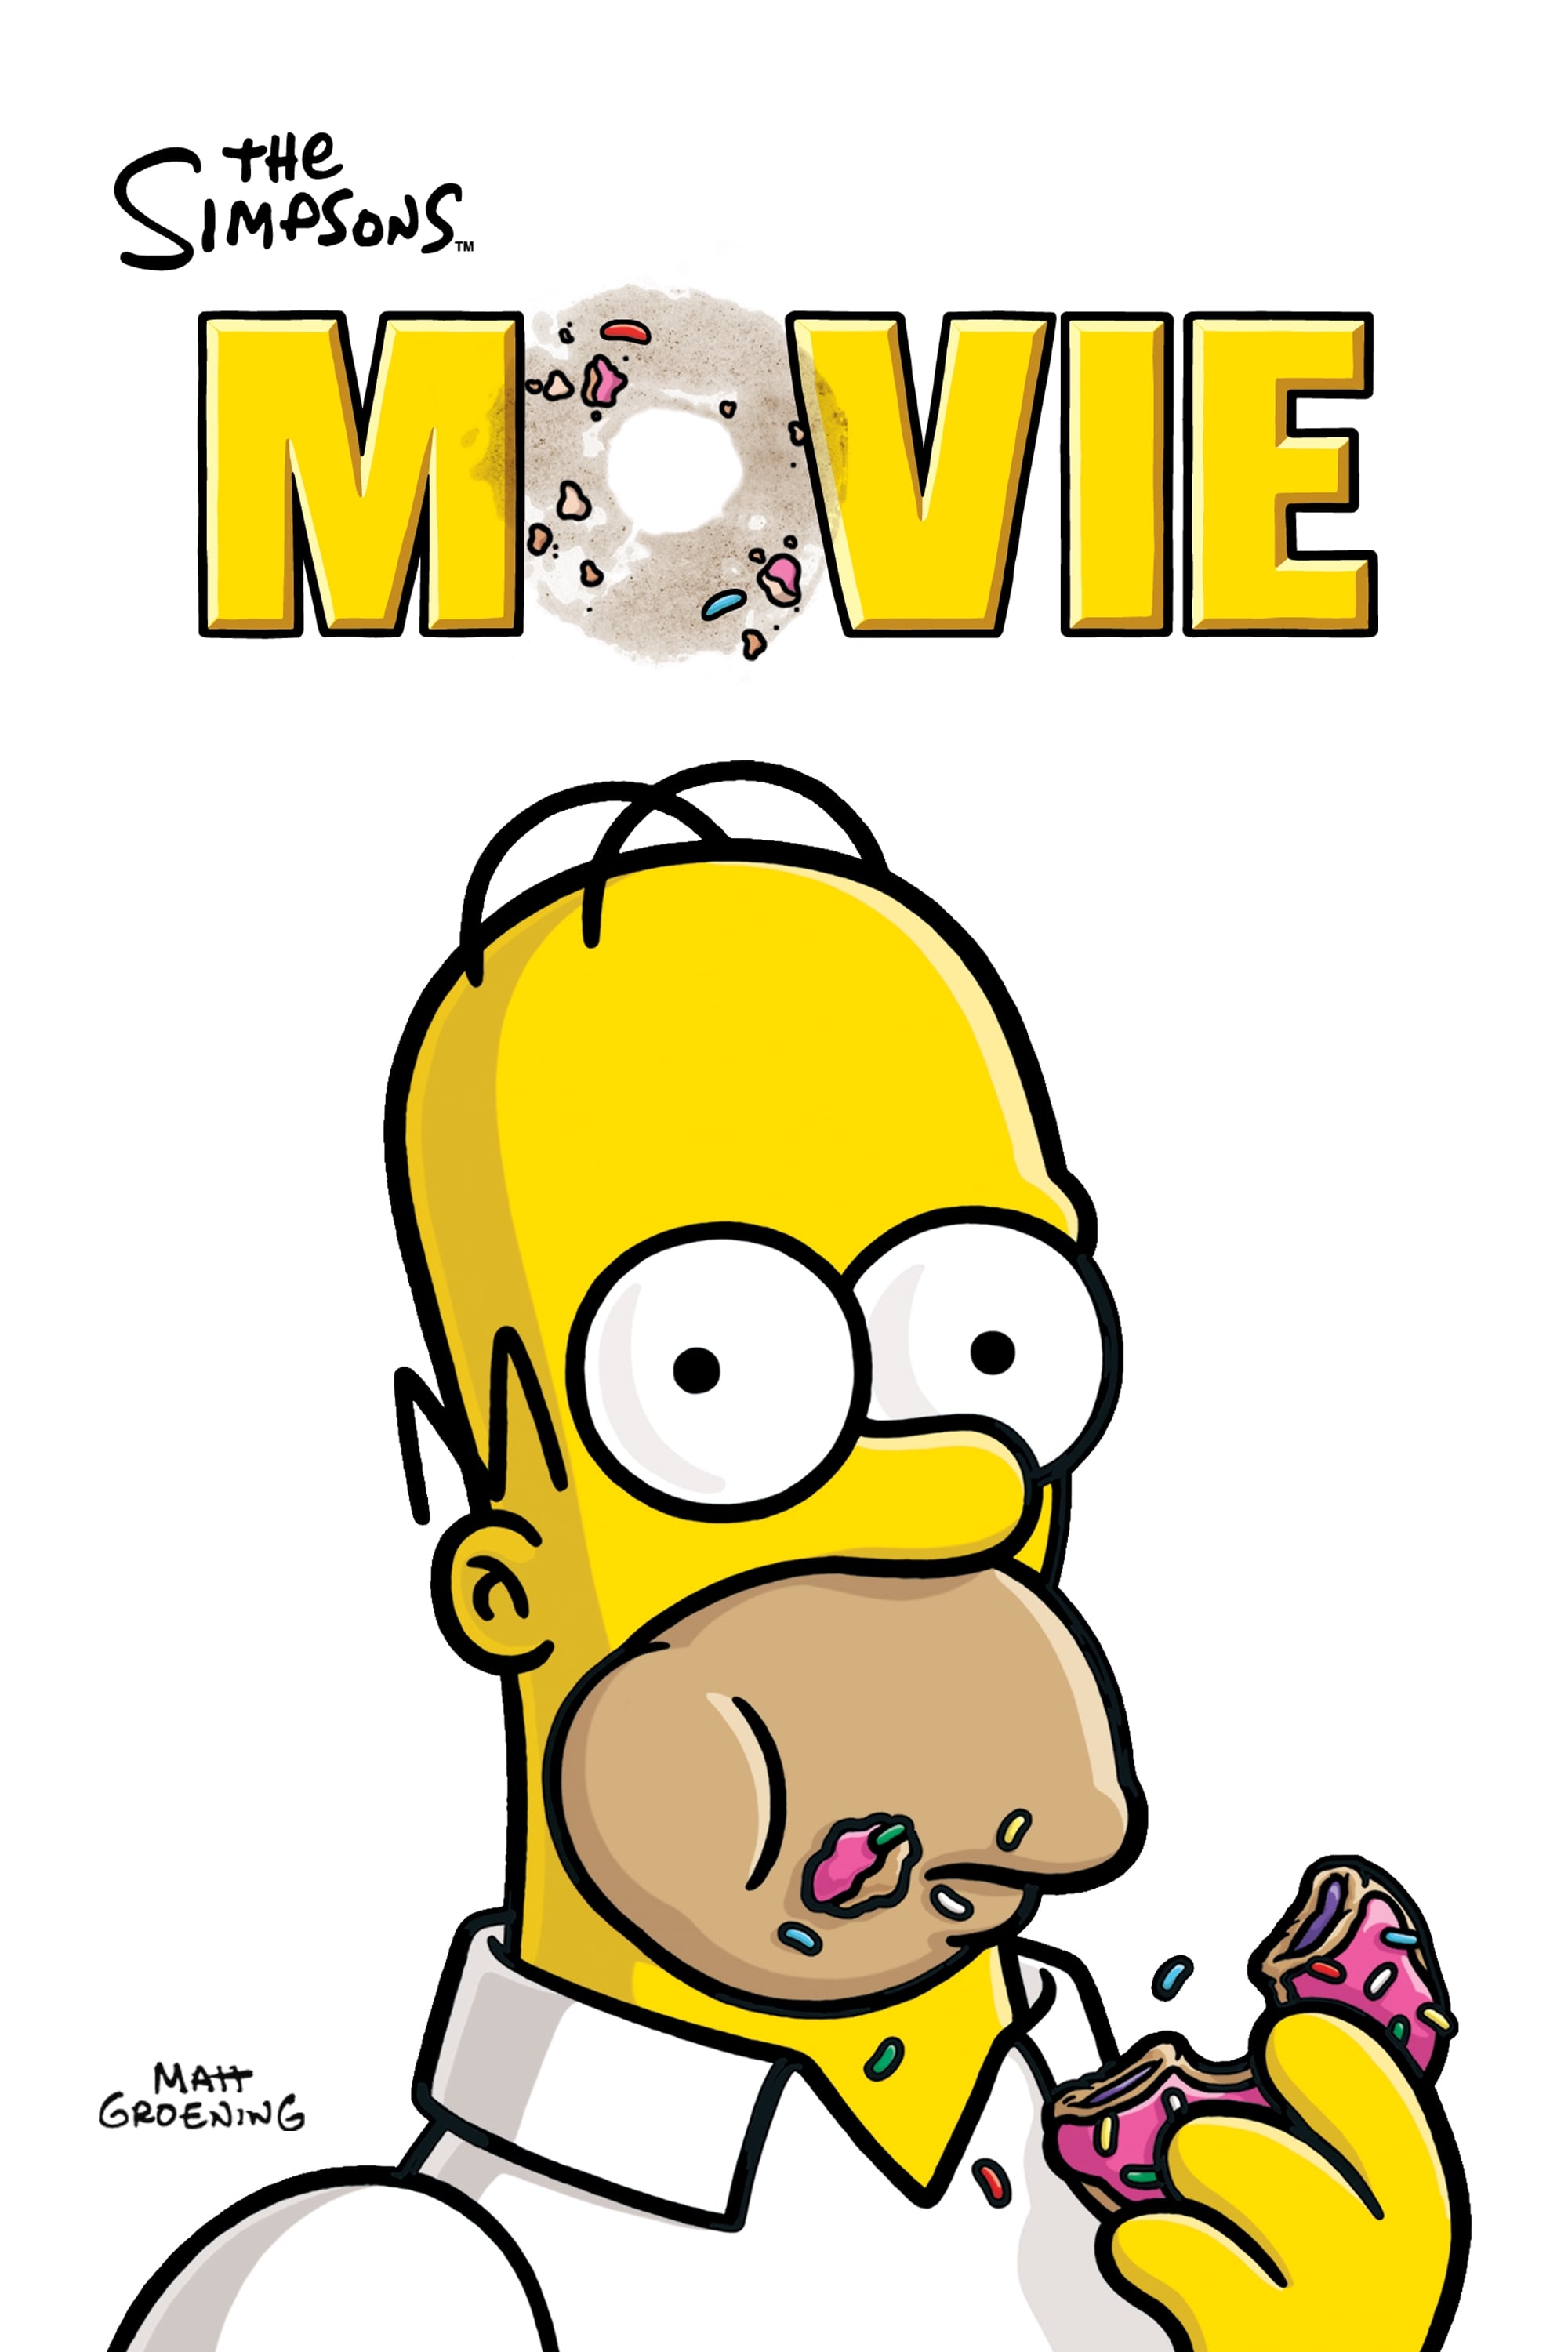 Os Simpsons: O Filme